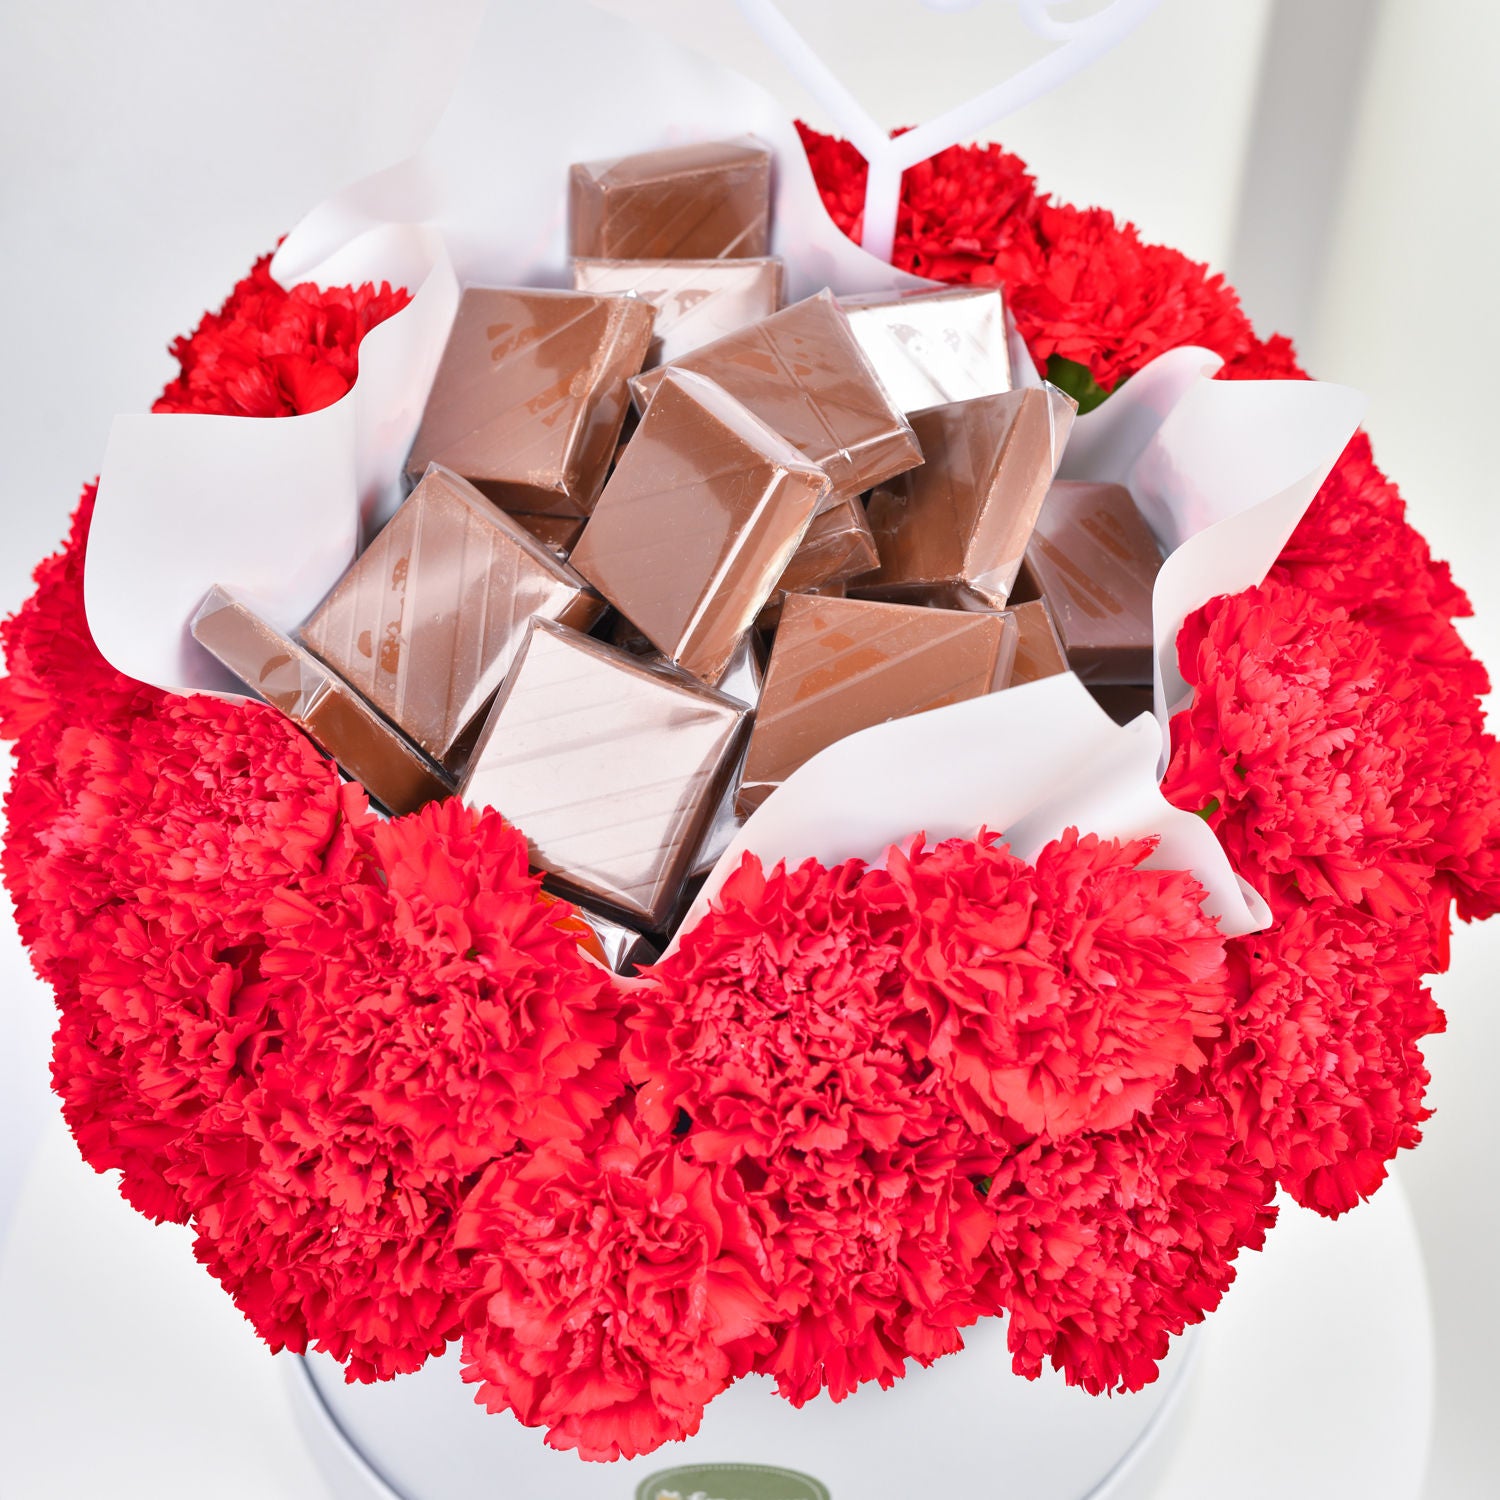 هدية حب - باقة قرنفل أحمر وشوكولاتة فاخرة في بوكس أبيض